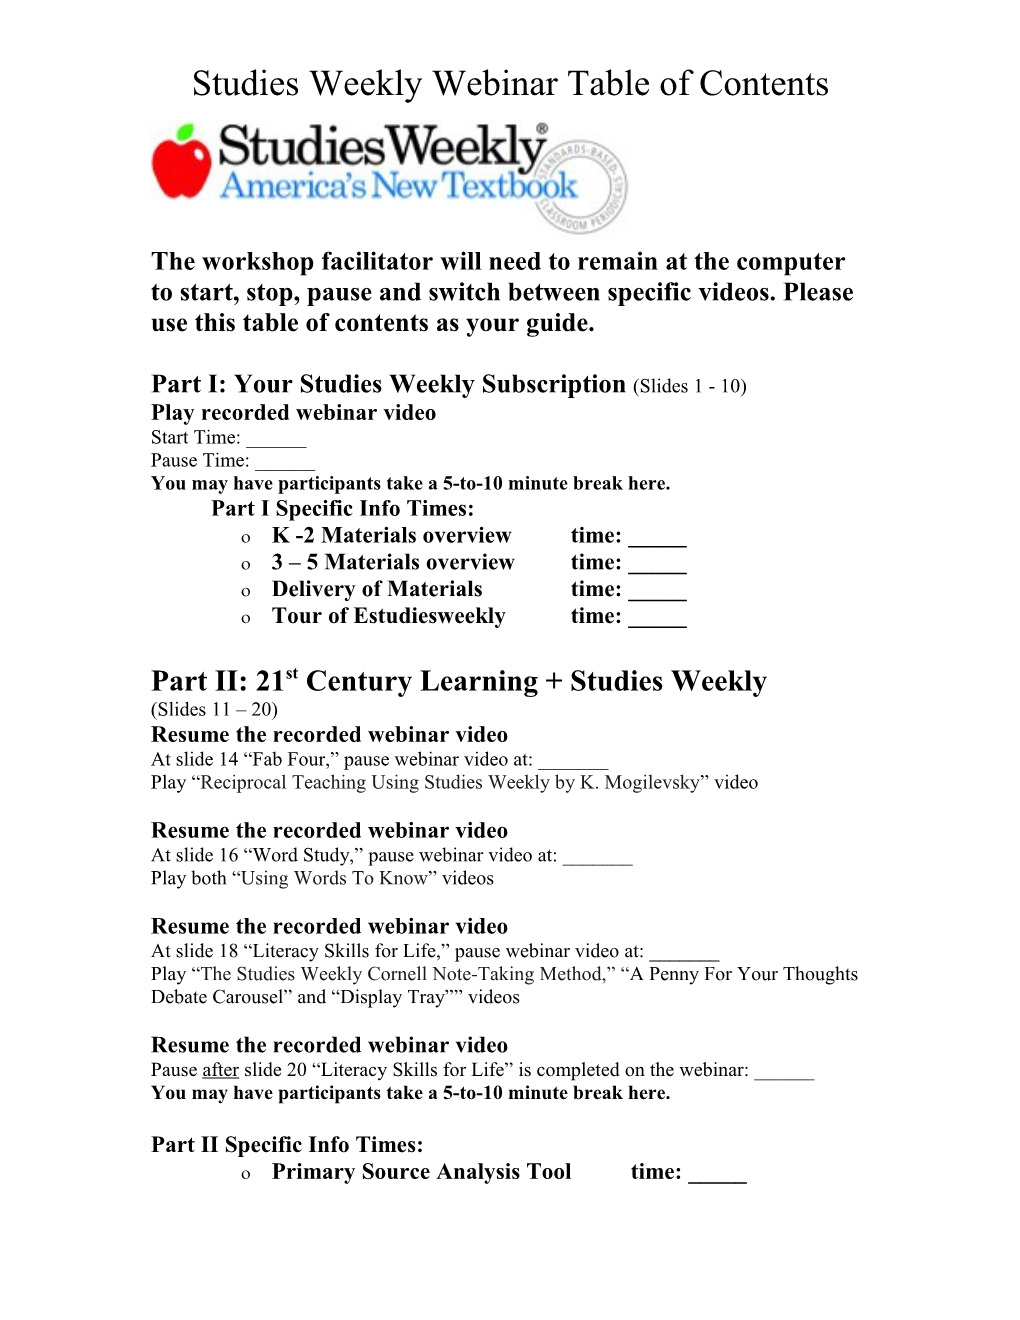 Studies Weekly Webinar Table of Contents